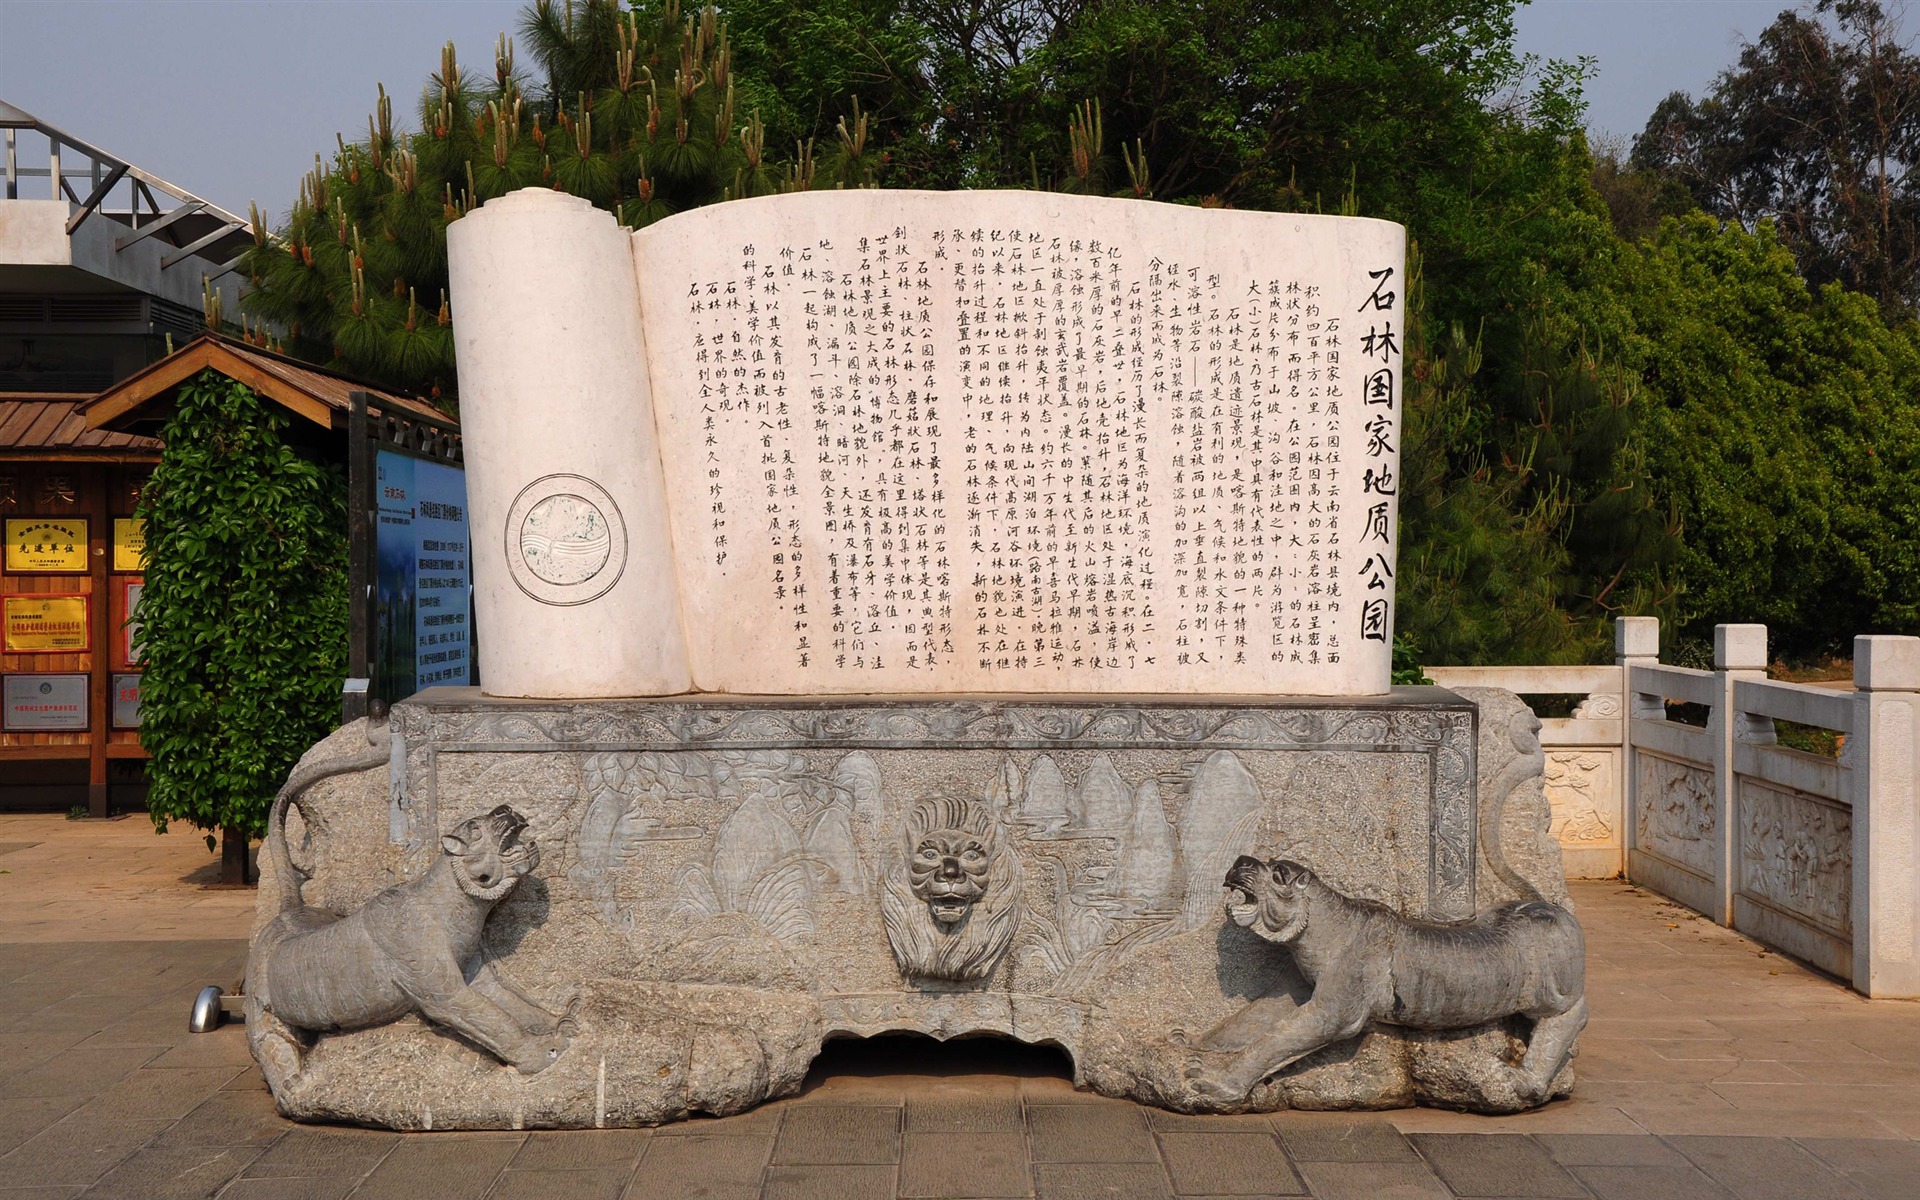 Stone Lesní v souladu Yunnan (2) (Khitan vlk práce) #31 - 1920x1200